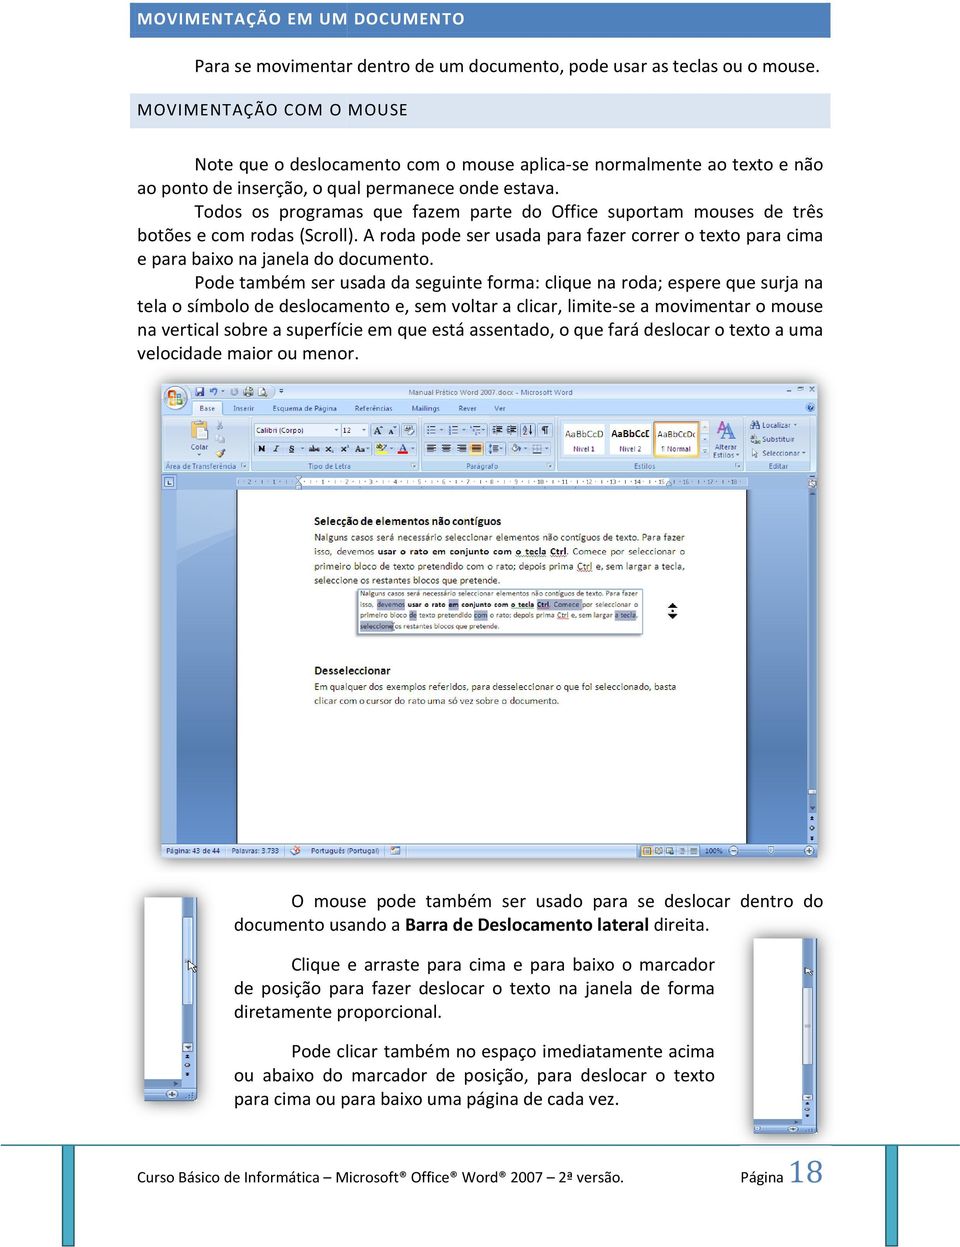 Todos os programas que fazem parte do Office suportam mouses de três botões e com rodas (Scroll). A roda pode ser usada para fazer correr o texto para cima e para baixo na janela do documento.